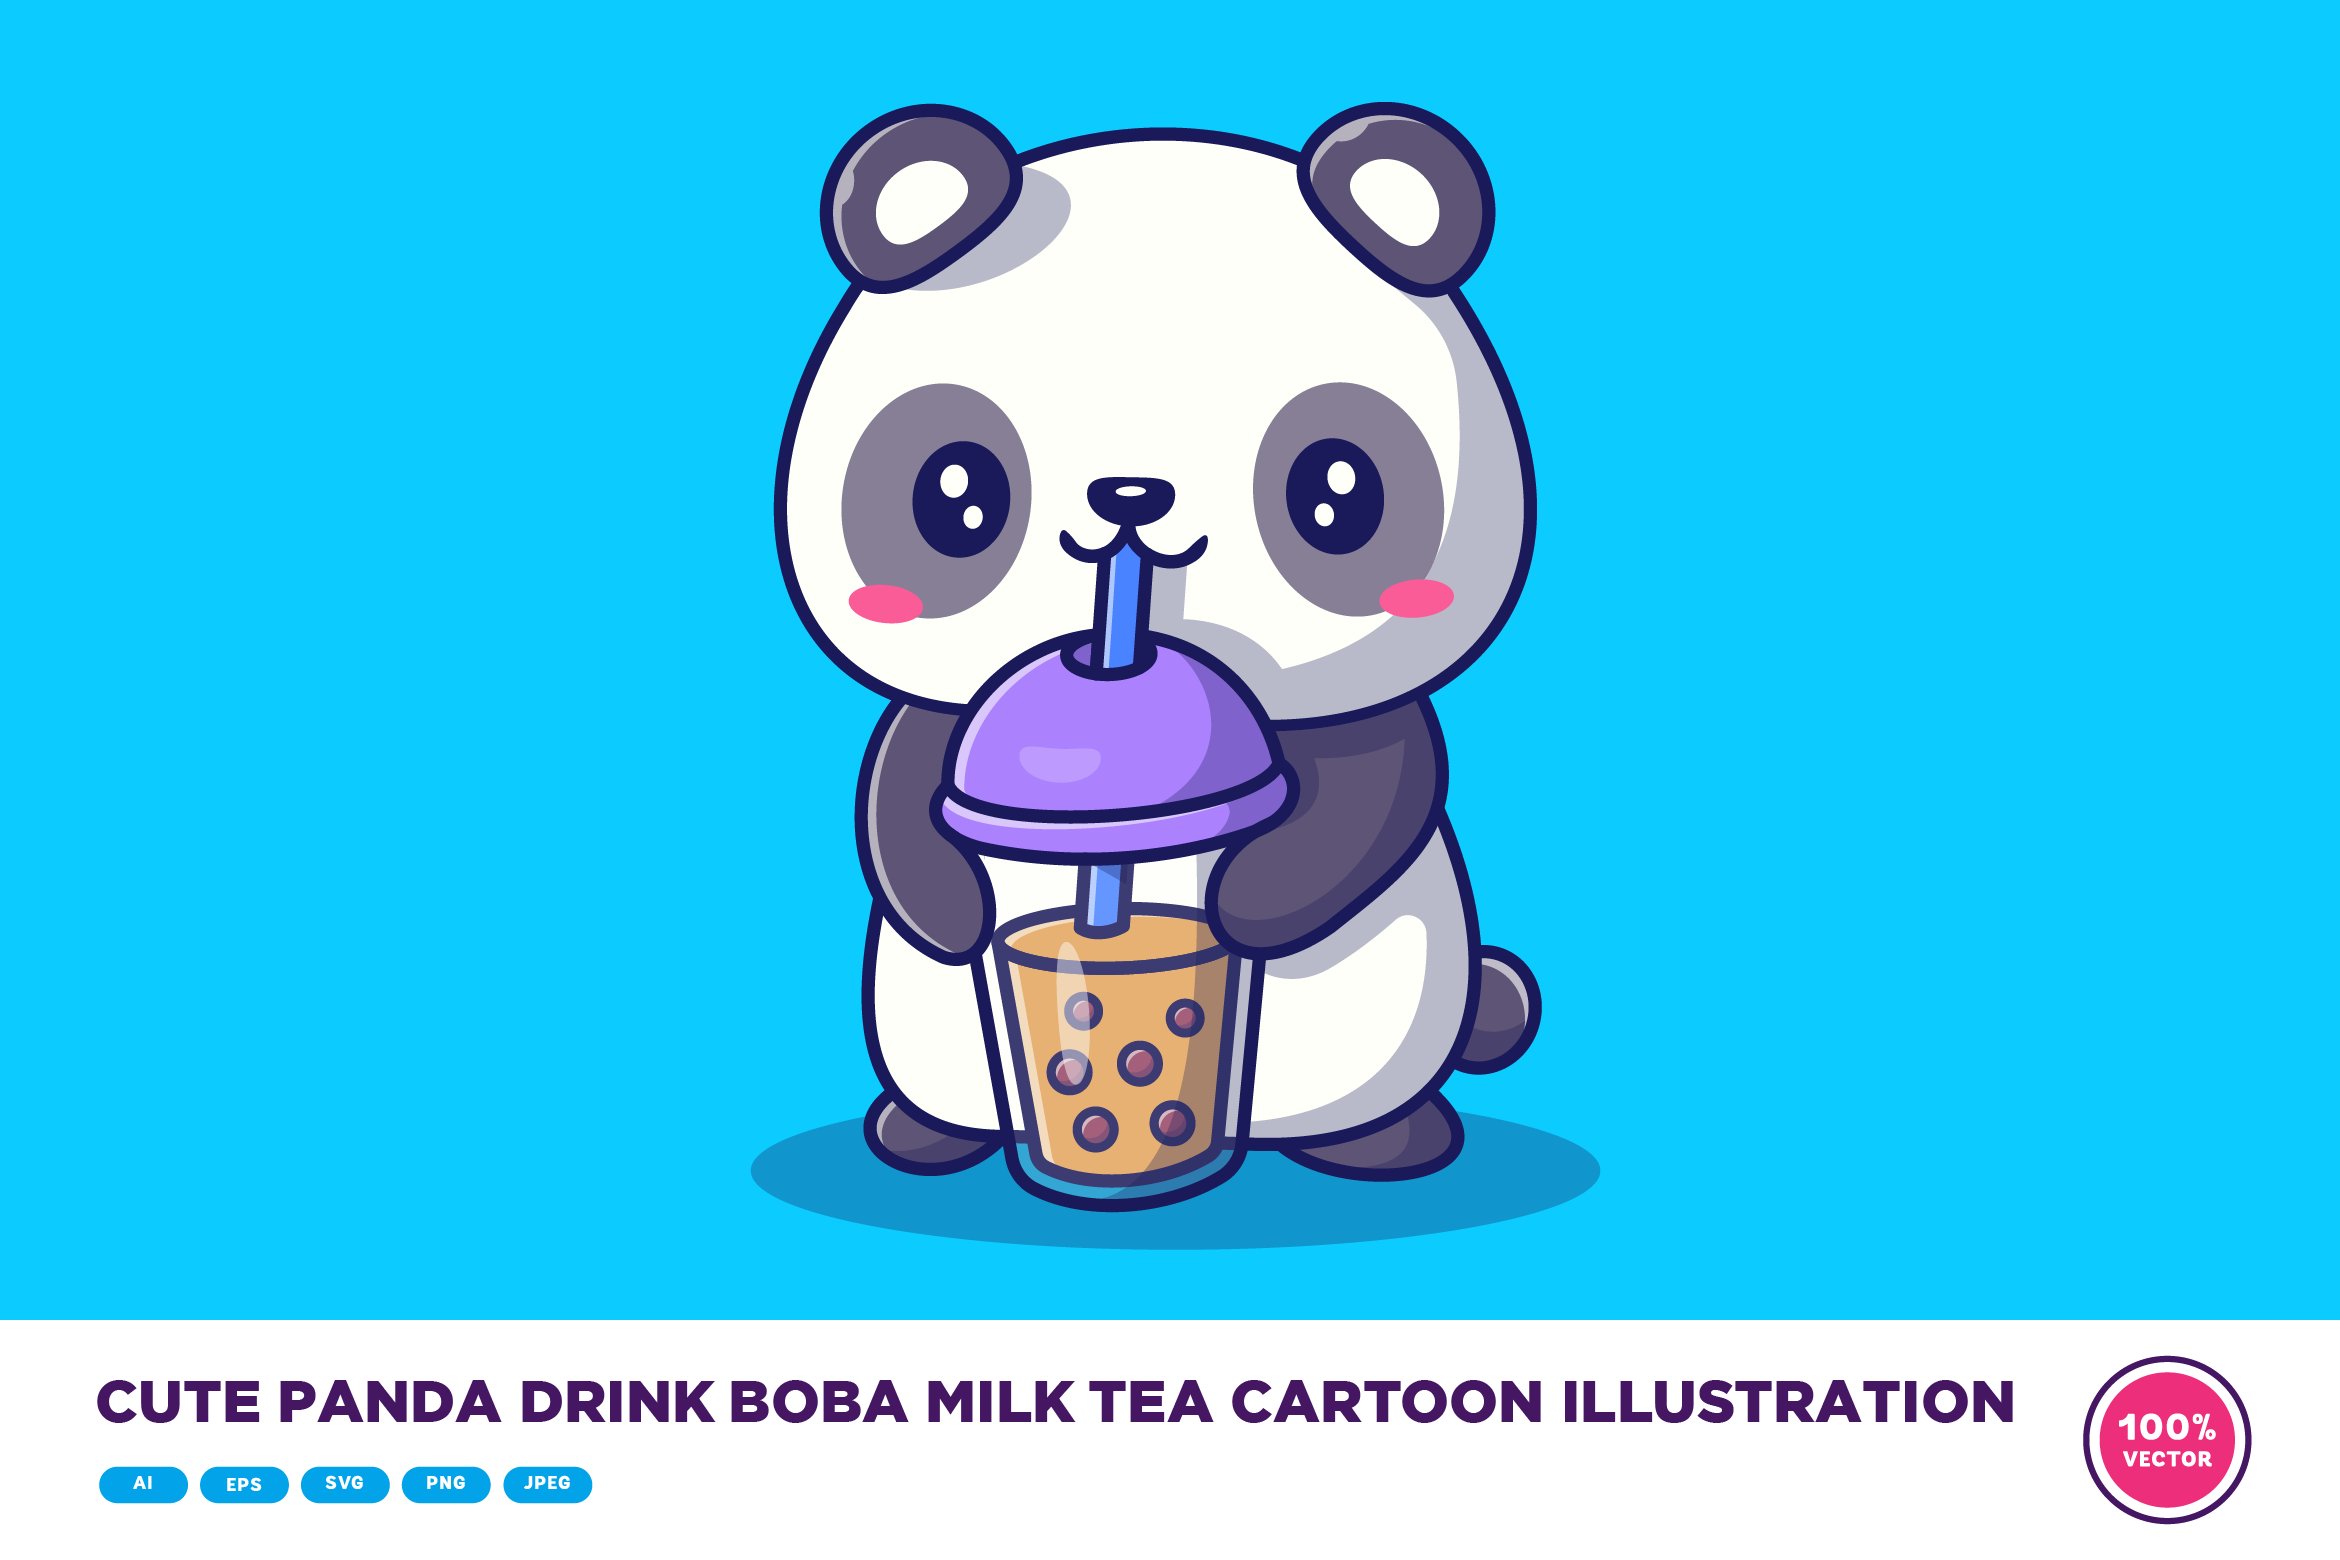 Cute Panda Drink Boba Milk Tea cover image.